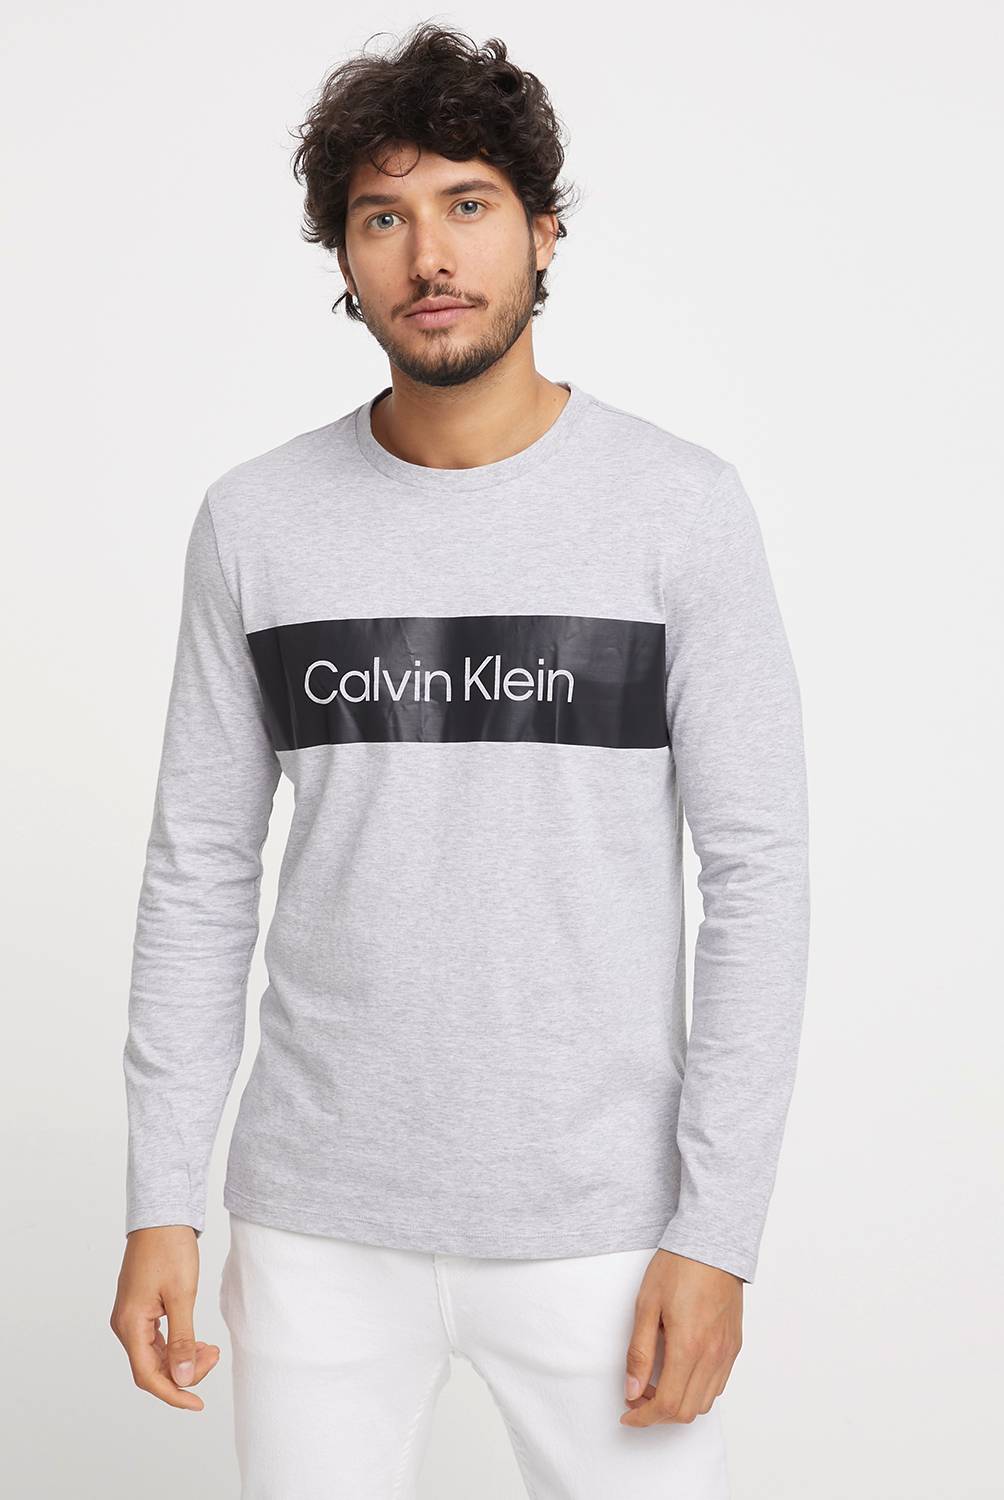 CALVIN KLEIN - Calvin Klein Polera Hombre